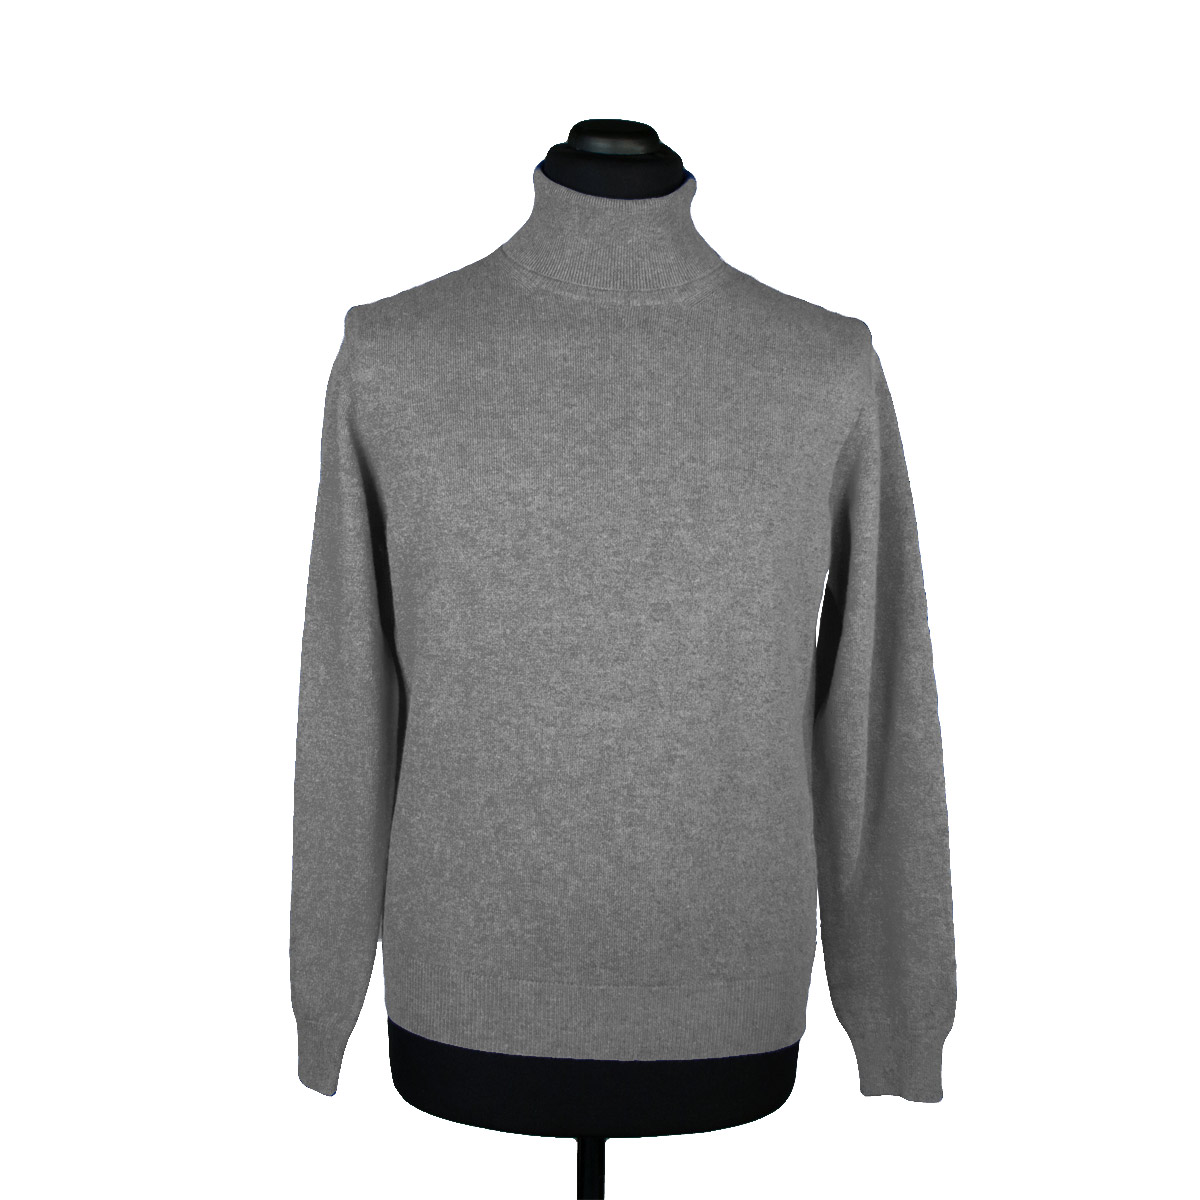 Cashmere turtleneck sweater for men, grey - Di Franco Moda Italiana